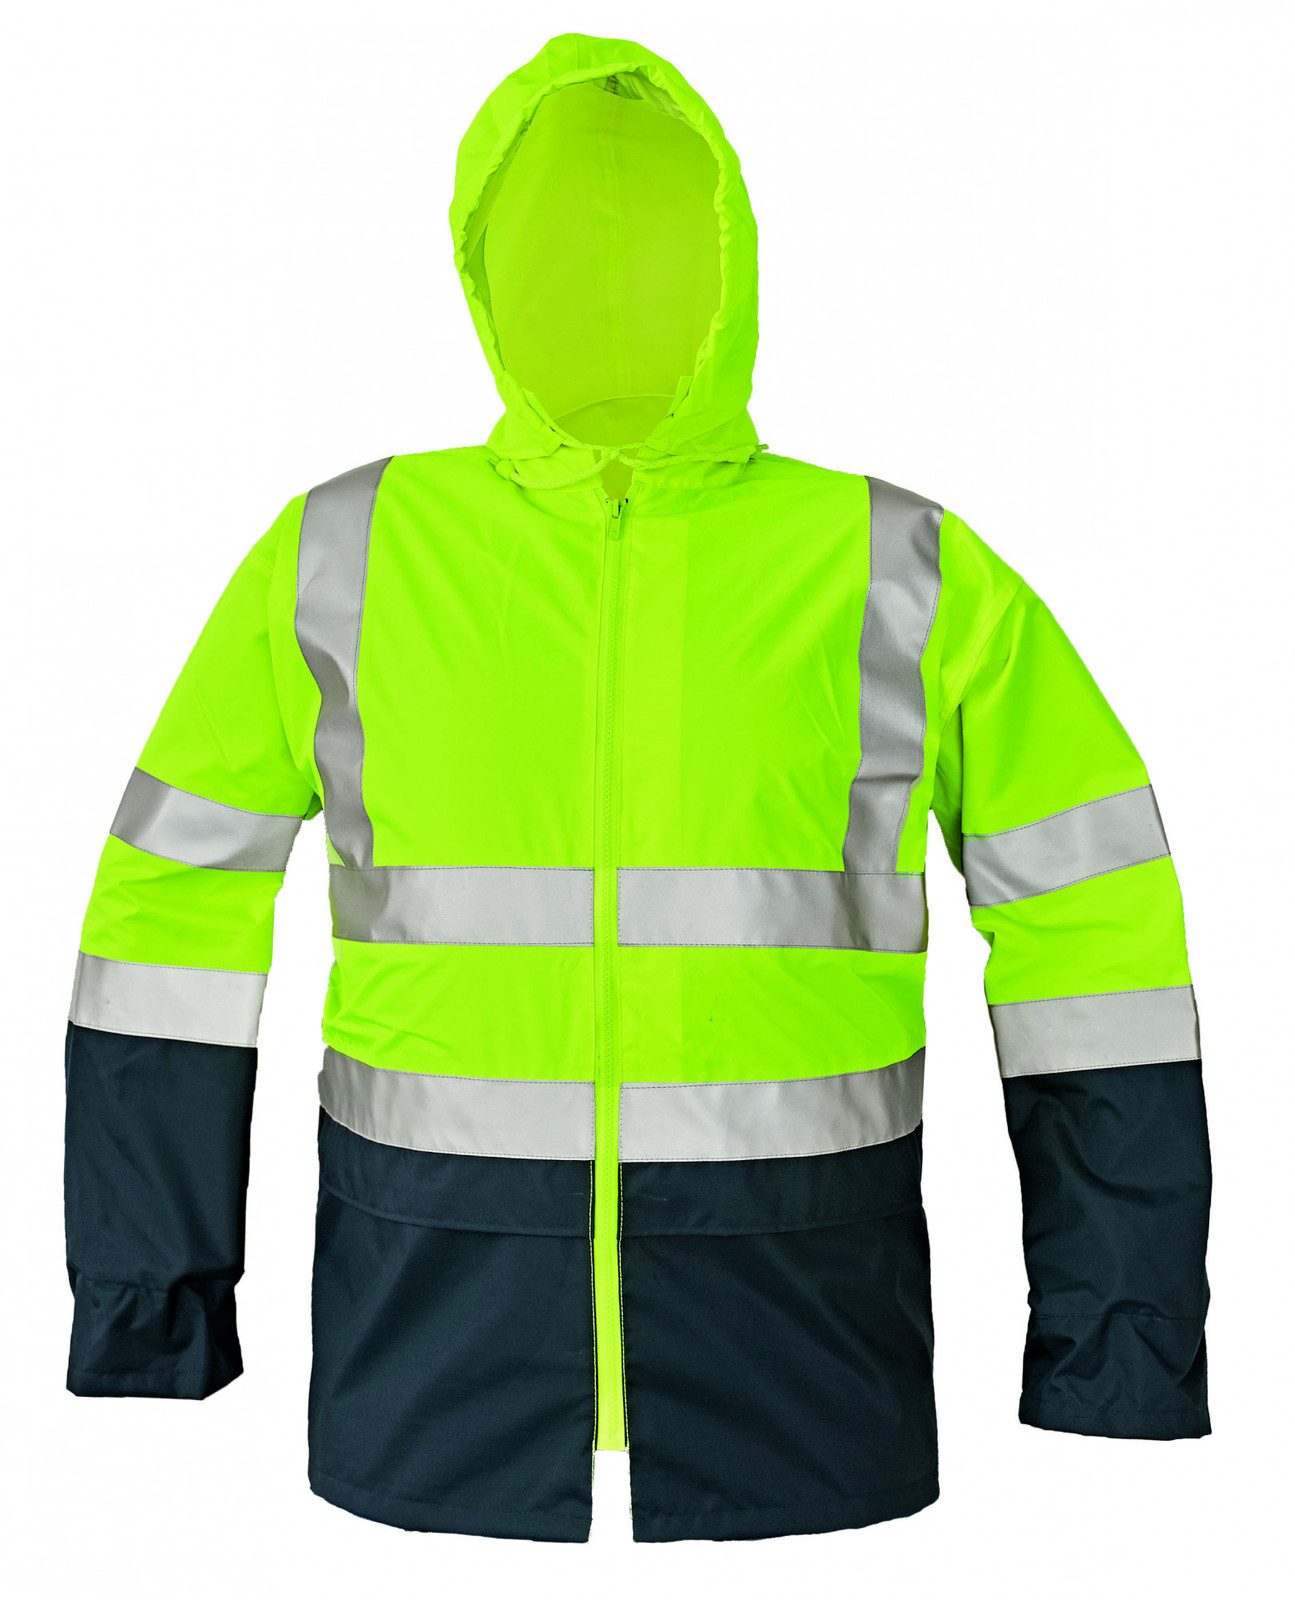 Reflexná pracovná bunda Epping - veľkosť: L, farba: žltá/navy